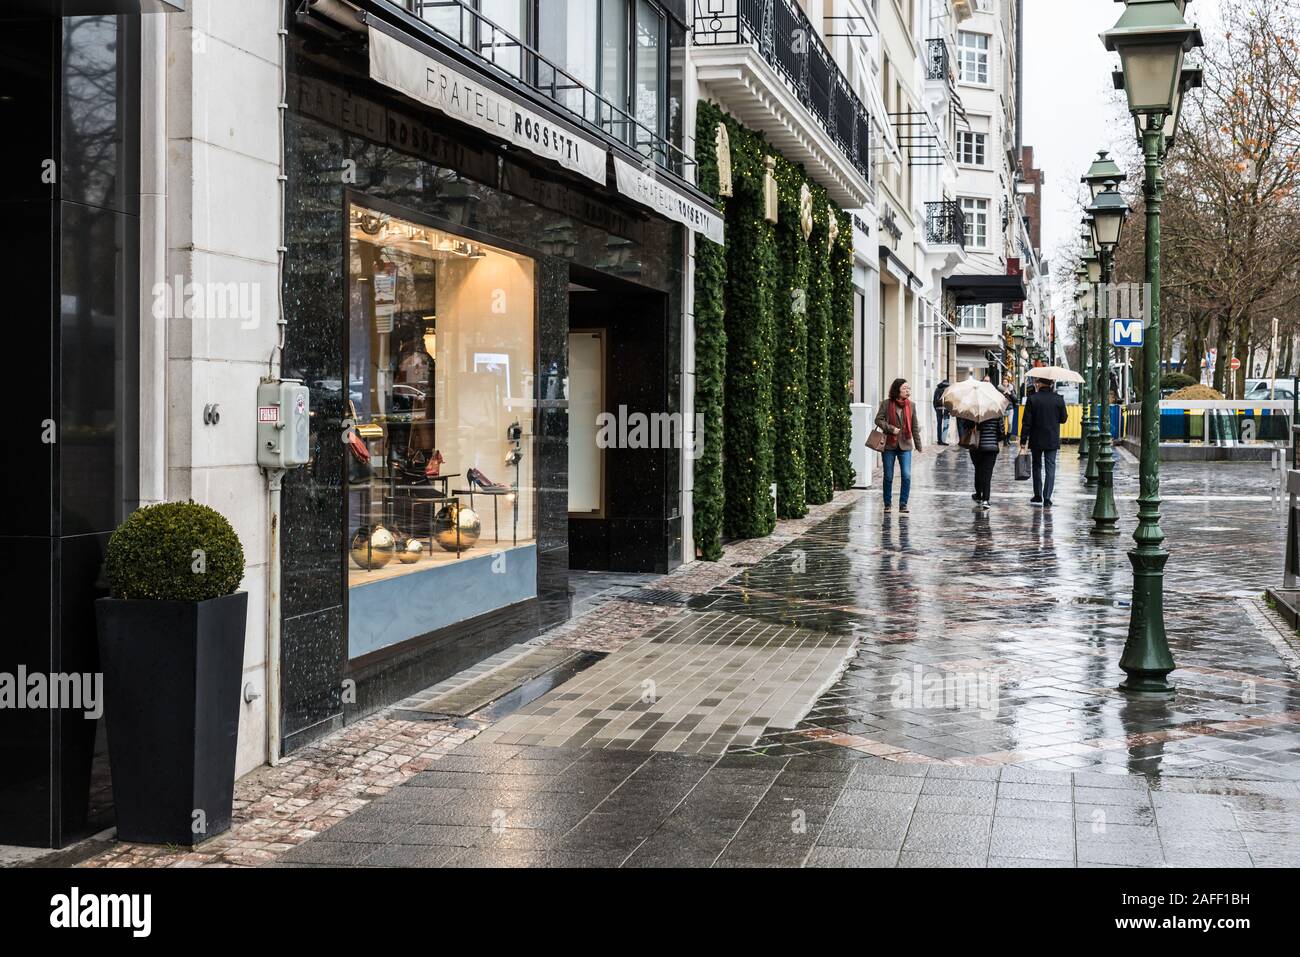 Vieille ville de Bruxelles, région de Bruxelles capitale / Belgique - 12 12 2019: Les gens qui marchent sur l'avenue de poisson d'Or près de Louise avec des boutiques de mode de luxe Banque D'Images